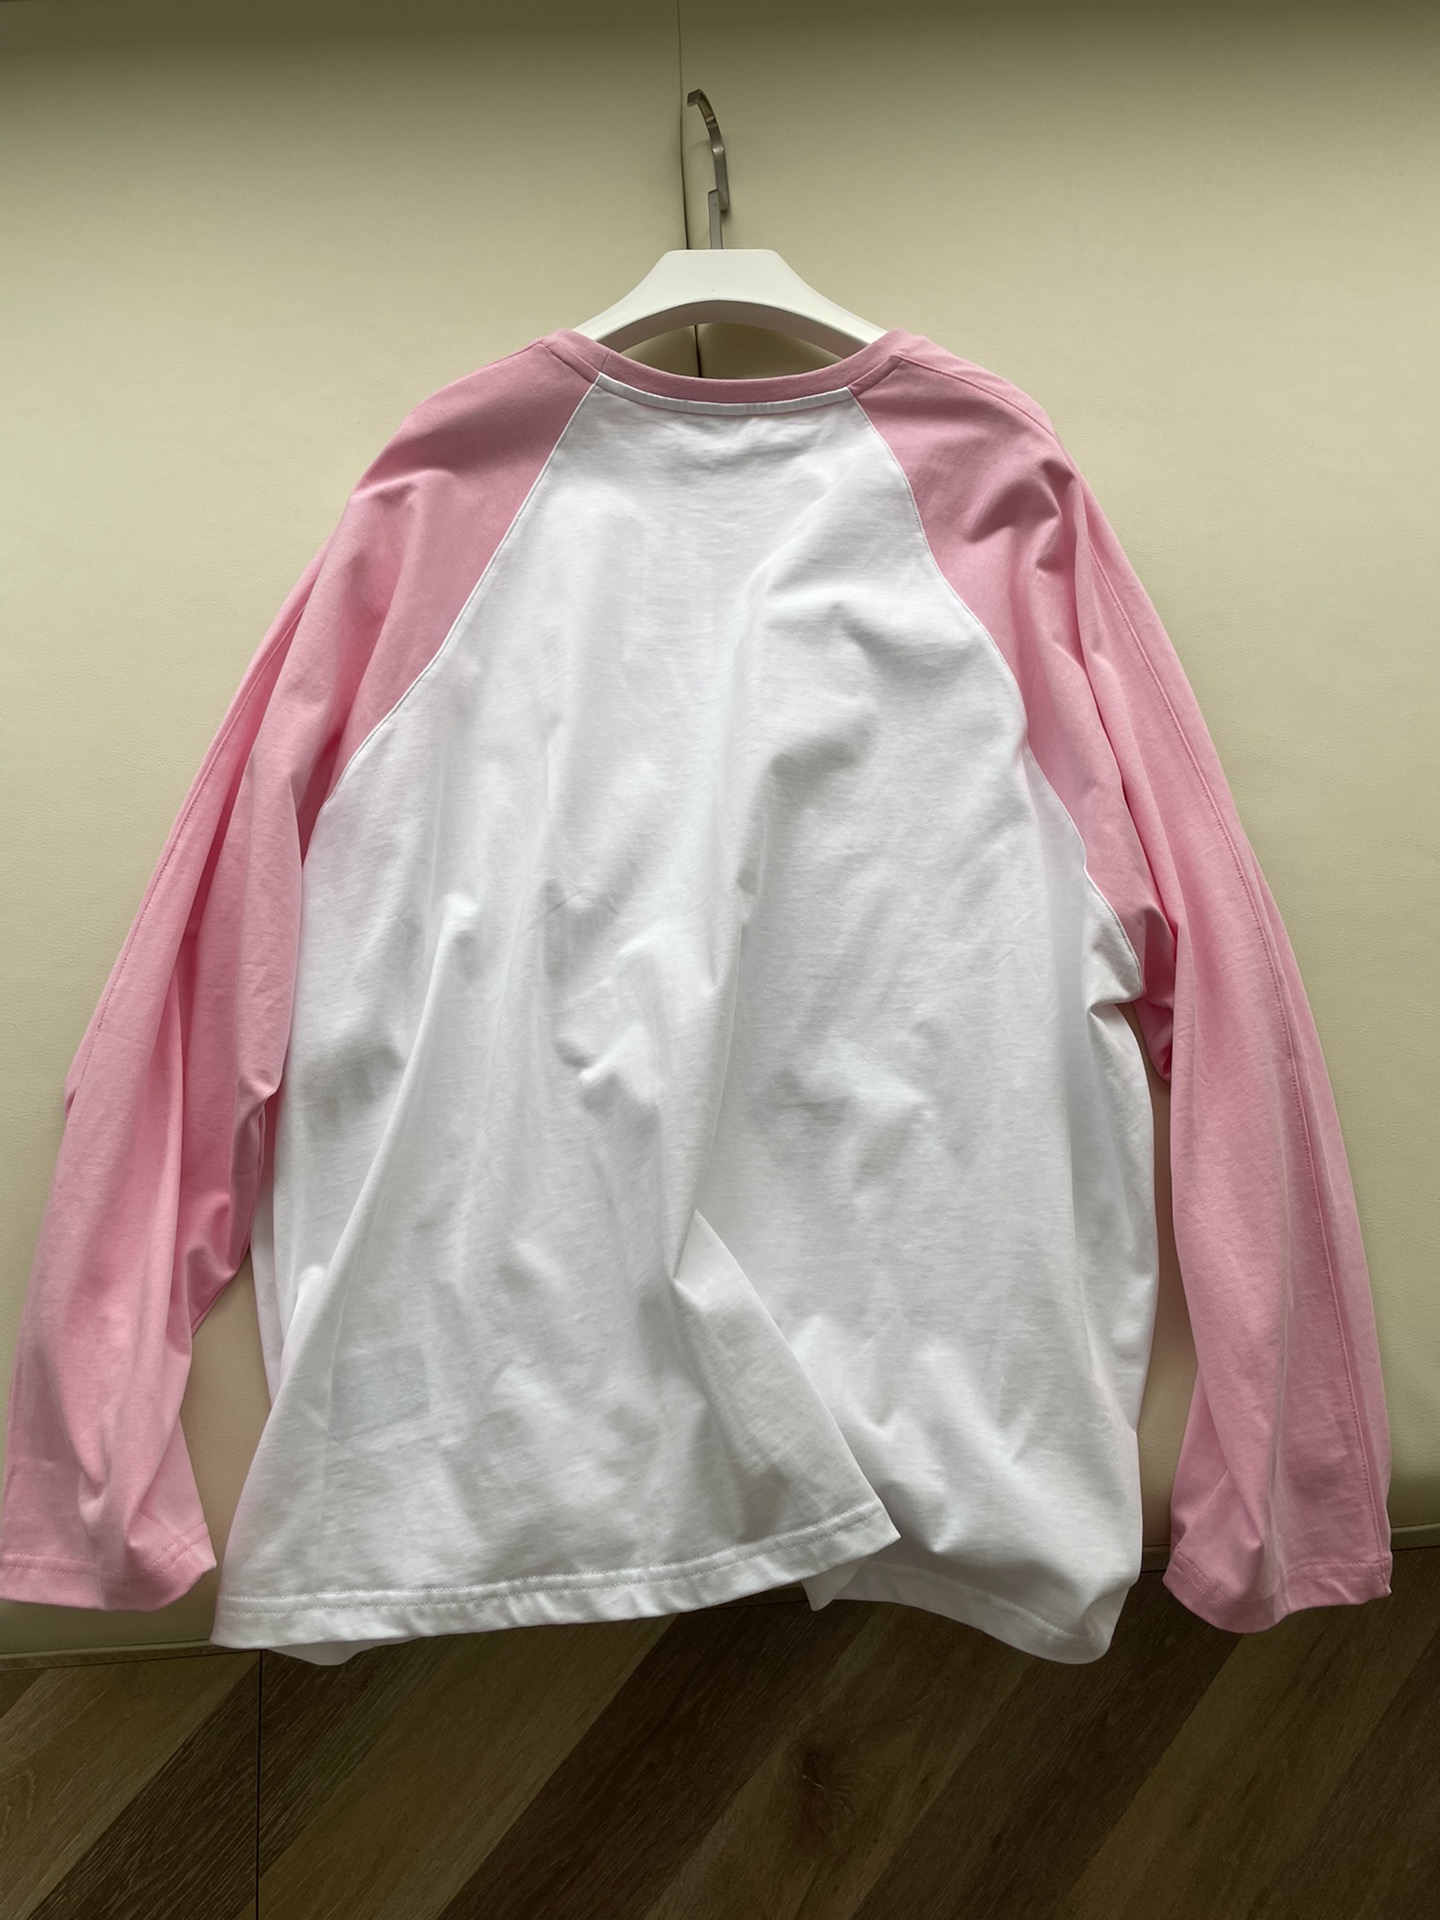 WE11DONE ウェルカムヘル tシャツスーパーコピー 純綿 長袖 トップス 人気もの 青春 シンプル ピンク_9